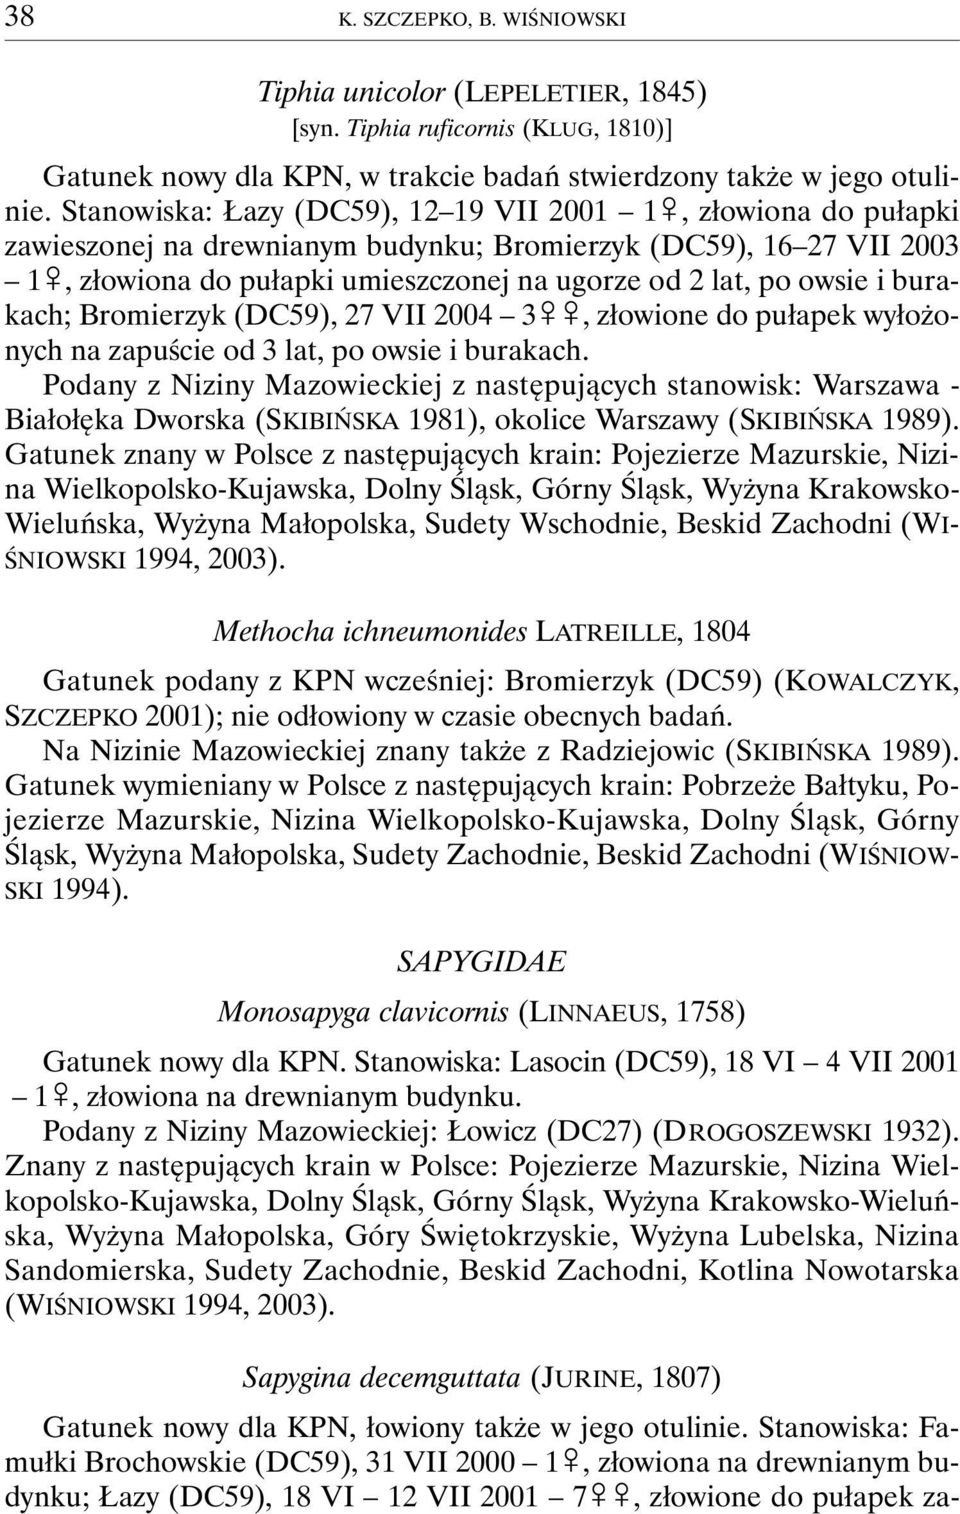 i burakach; Bromierzyk (DC59), 27 VII 2004 3&&, złowione do pułapek wyłożonych na zapuście od 3 lat, po owsie i burakach.